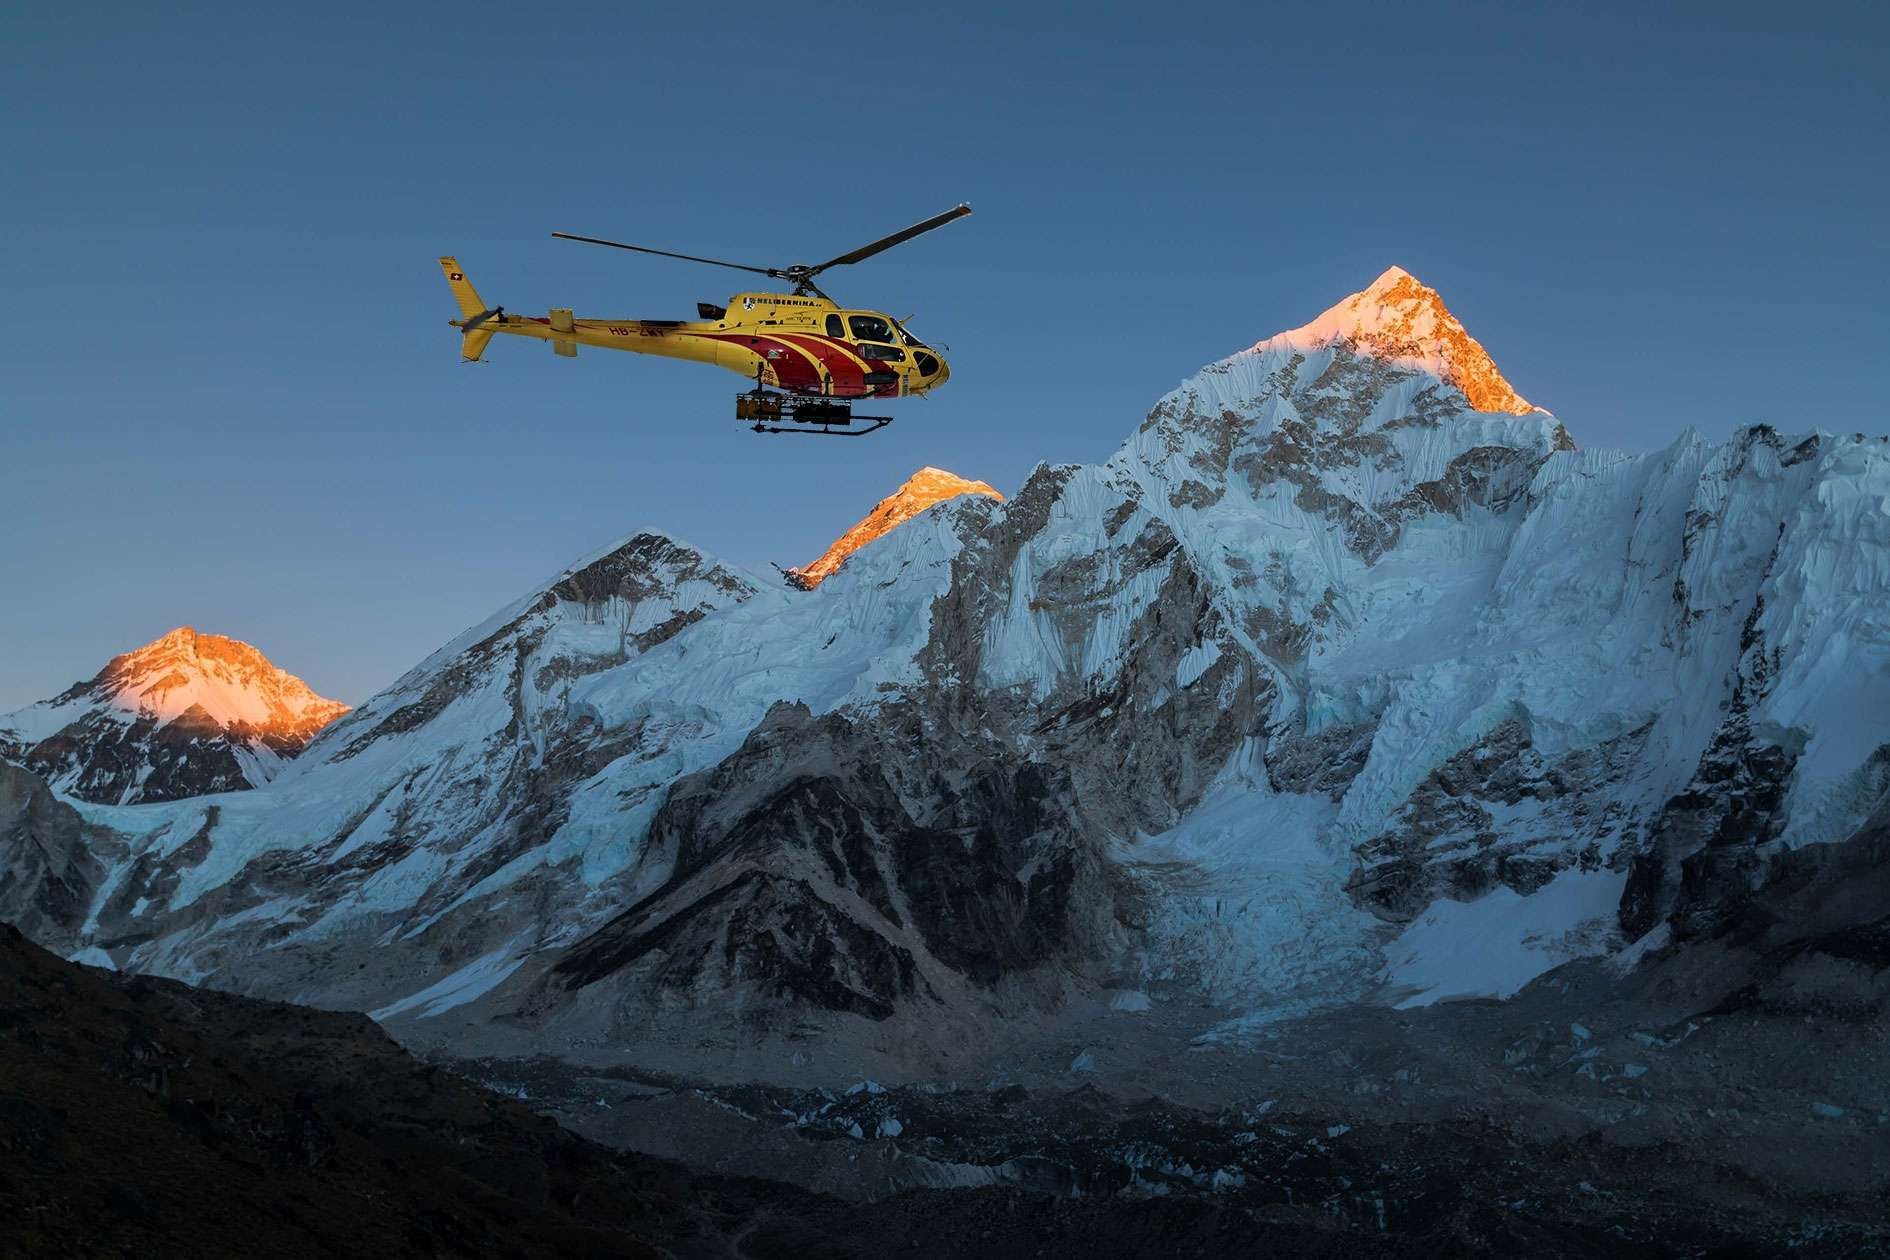 Enjoy Nepal through Helicopter Tours